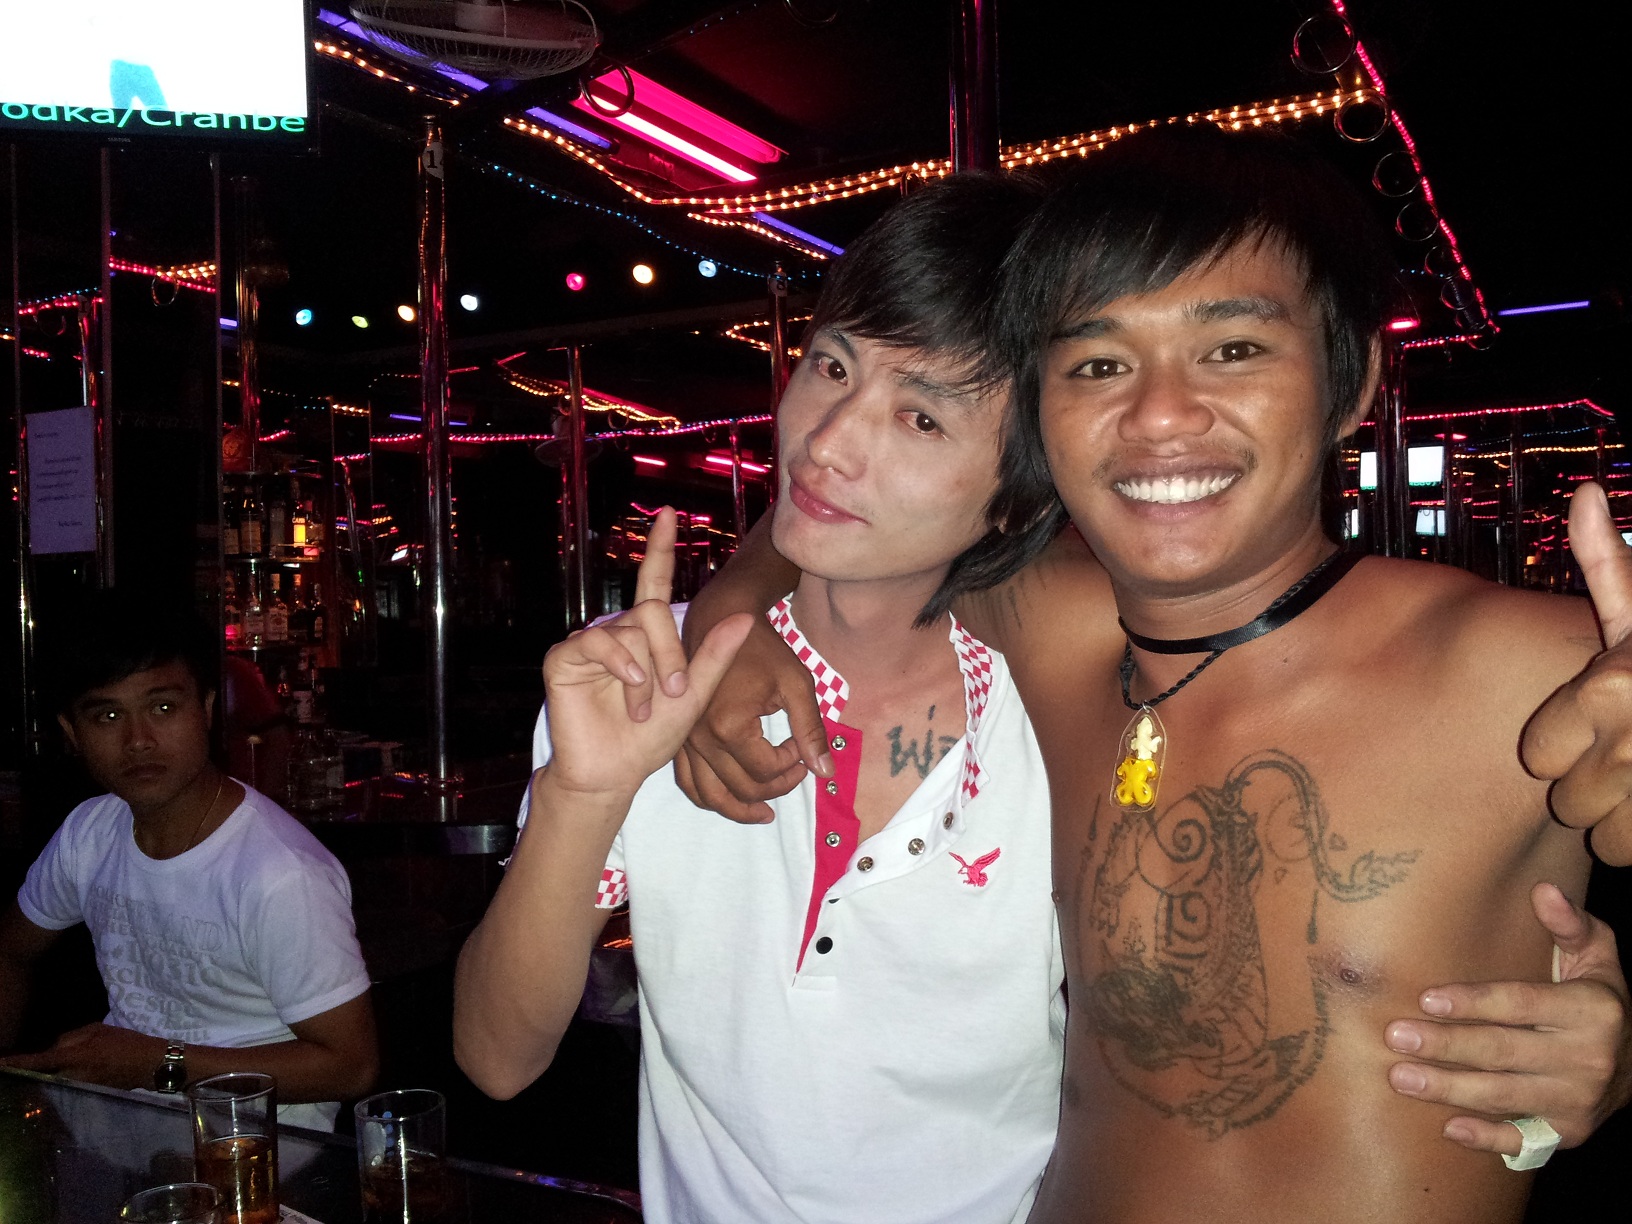 Thailand boy